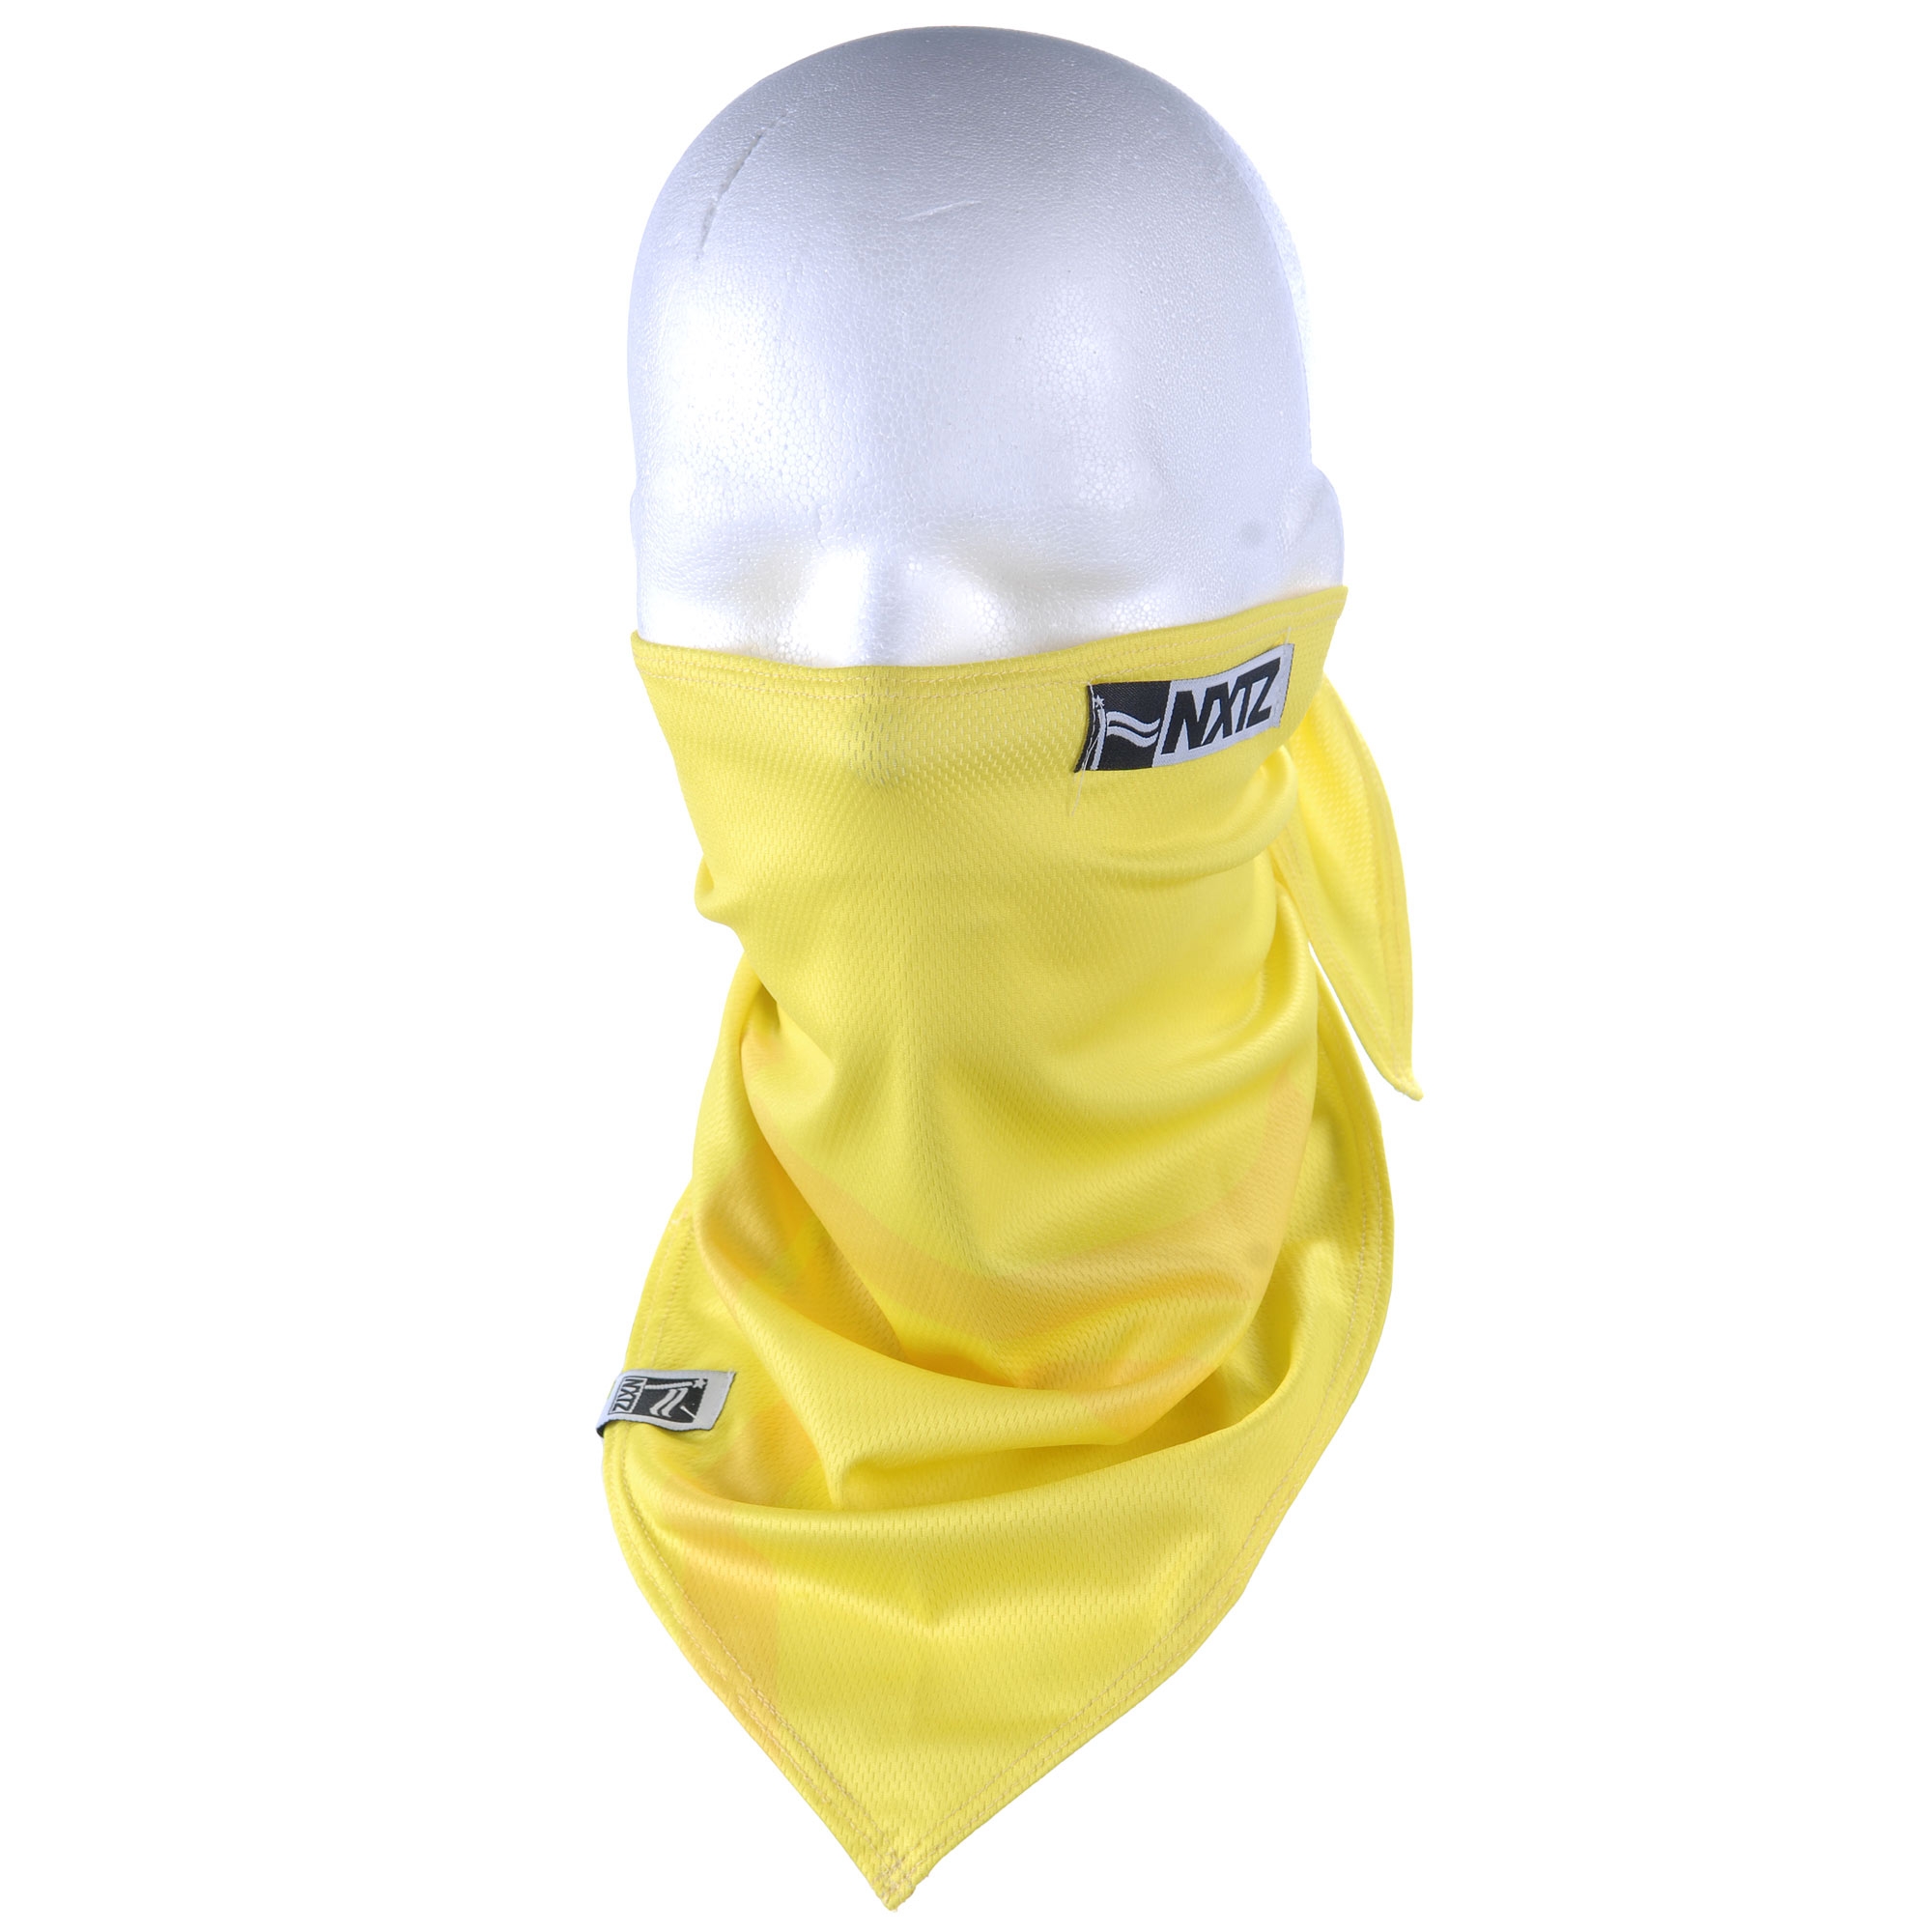 NXTZ Bandana 1L solids yellow | Snowboard Zezula